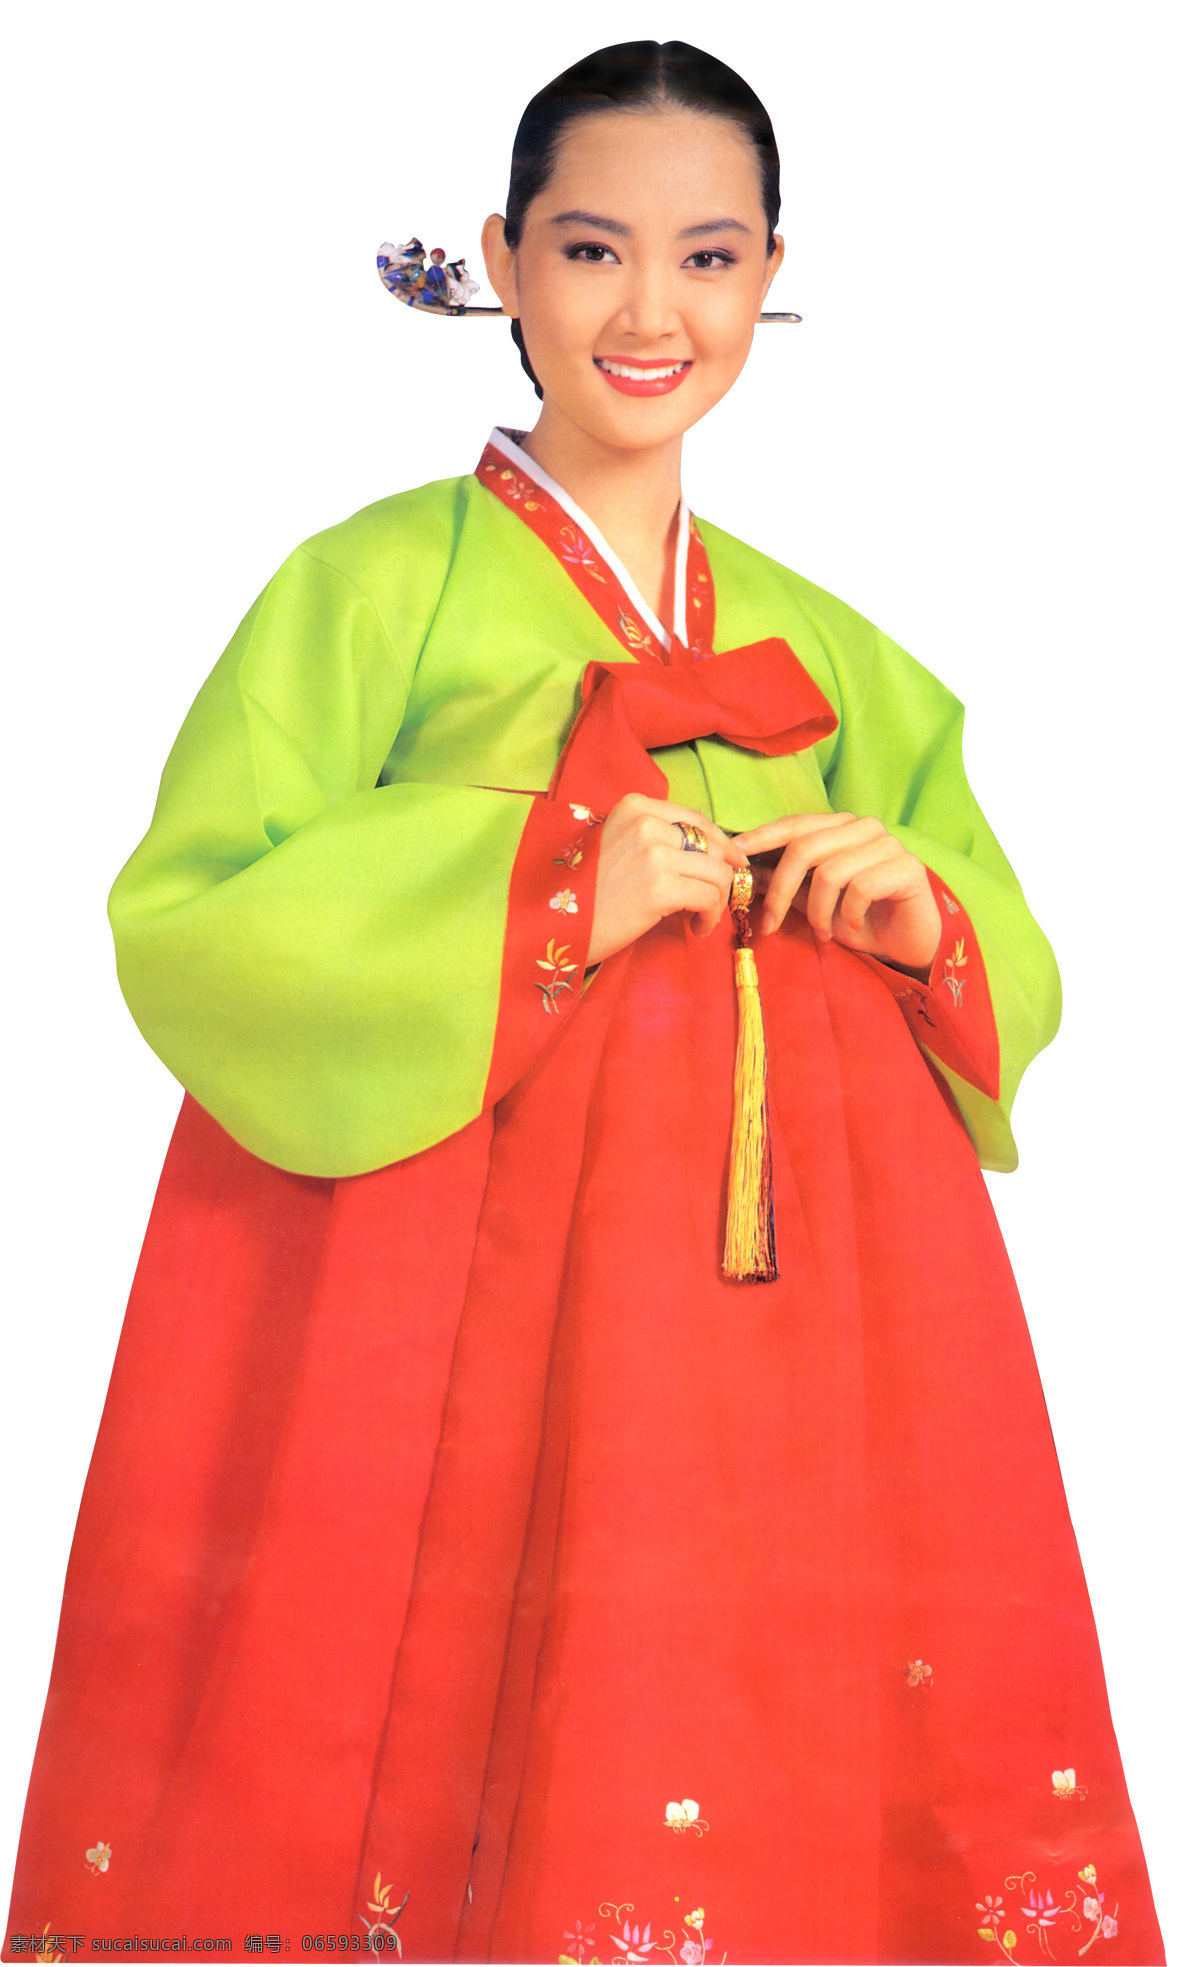 朝鲜女人 朝鲜 女人 韩国 大图 鲜族 人物图库 女性女人 摄影图库